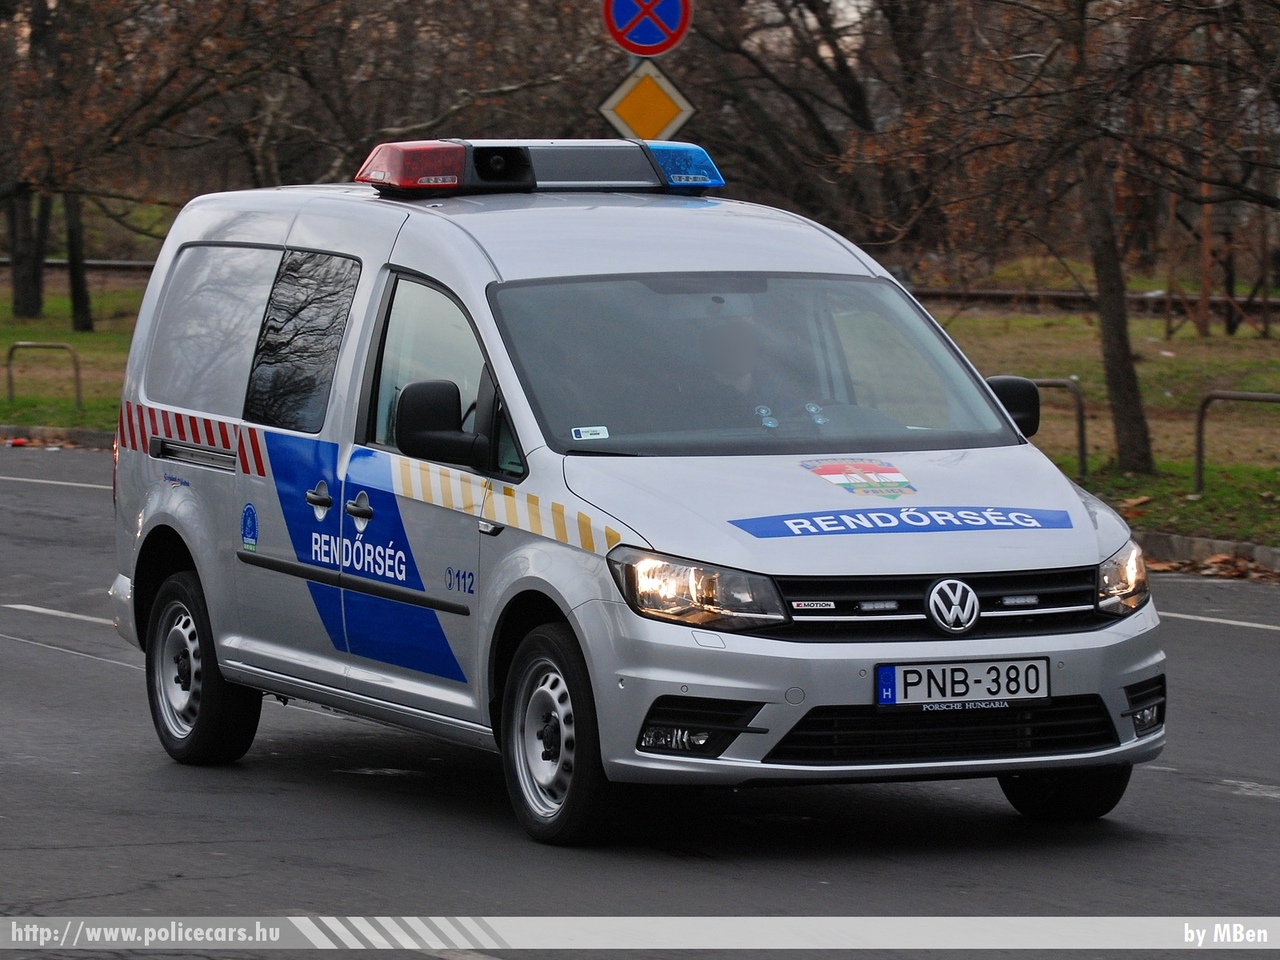 Volkswagen Caddy TDI 4Motion, fotó: MBen
Keywords: PNB-380 rendőr rendőrautó rendőrség magyar Magyarország Hungary hungarian police policecar készenléti